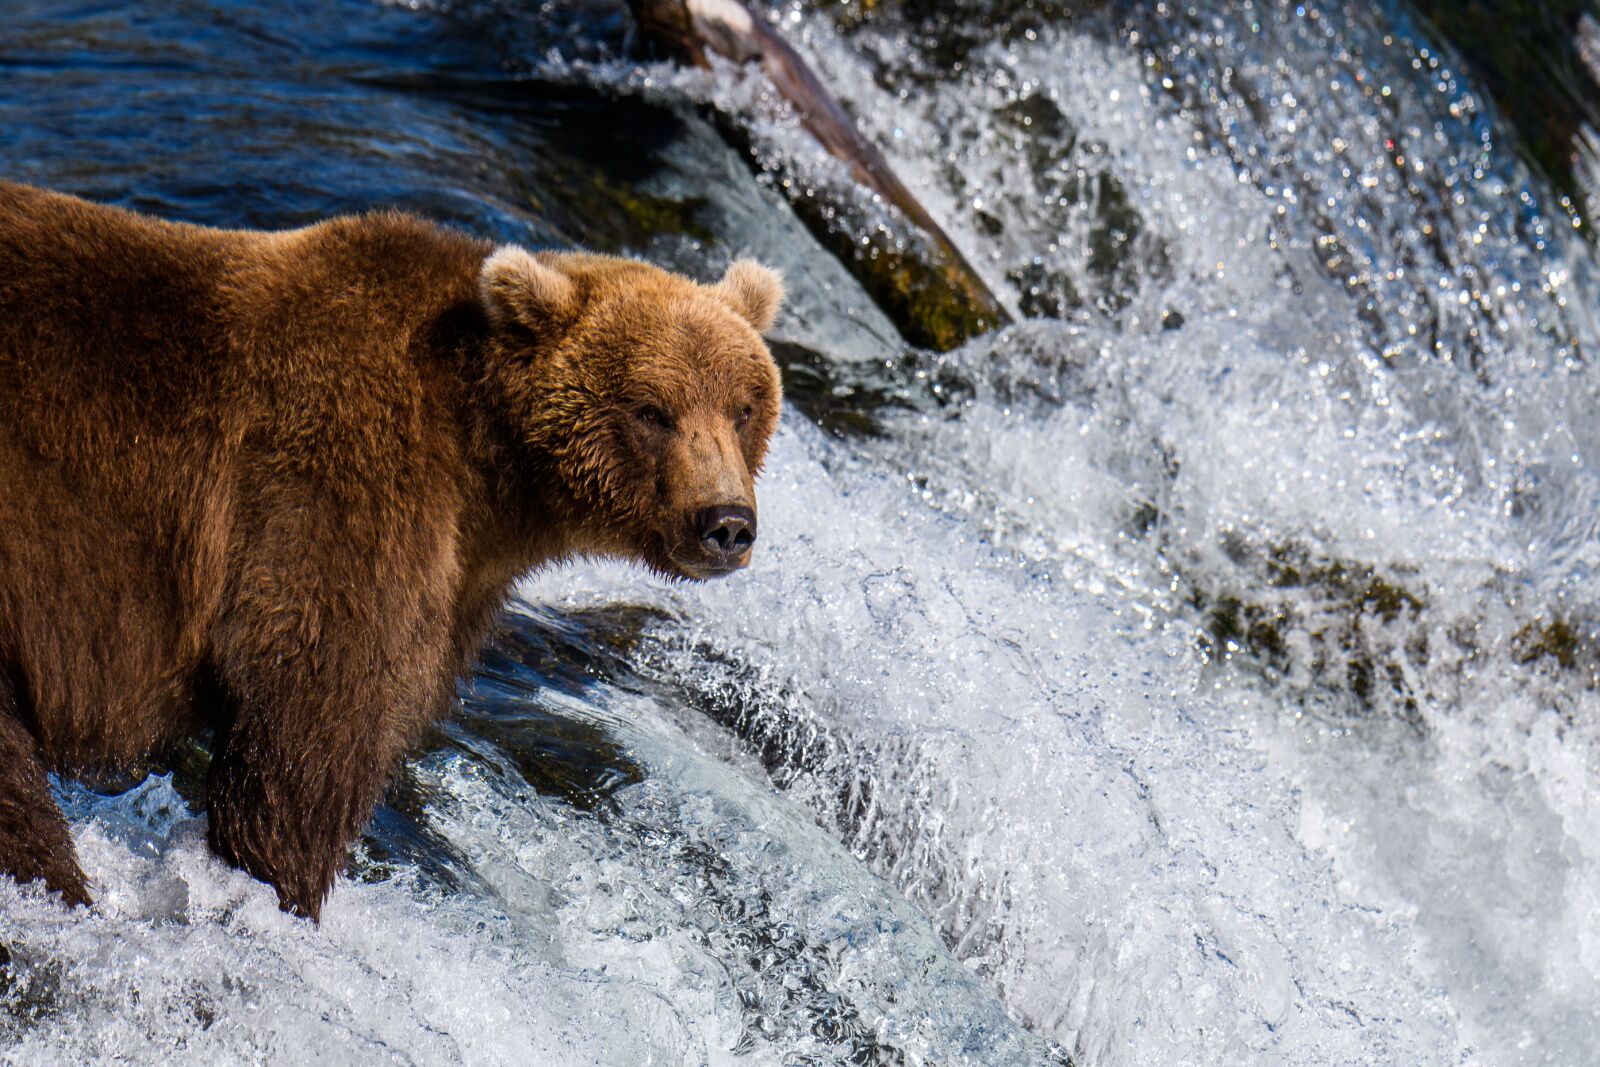 alaska in september - airbnbs in alaska - brown bear in water